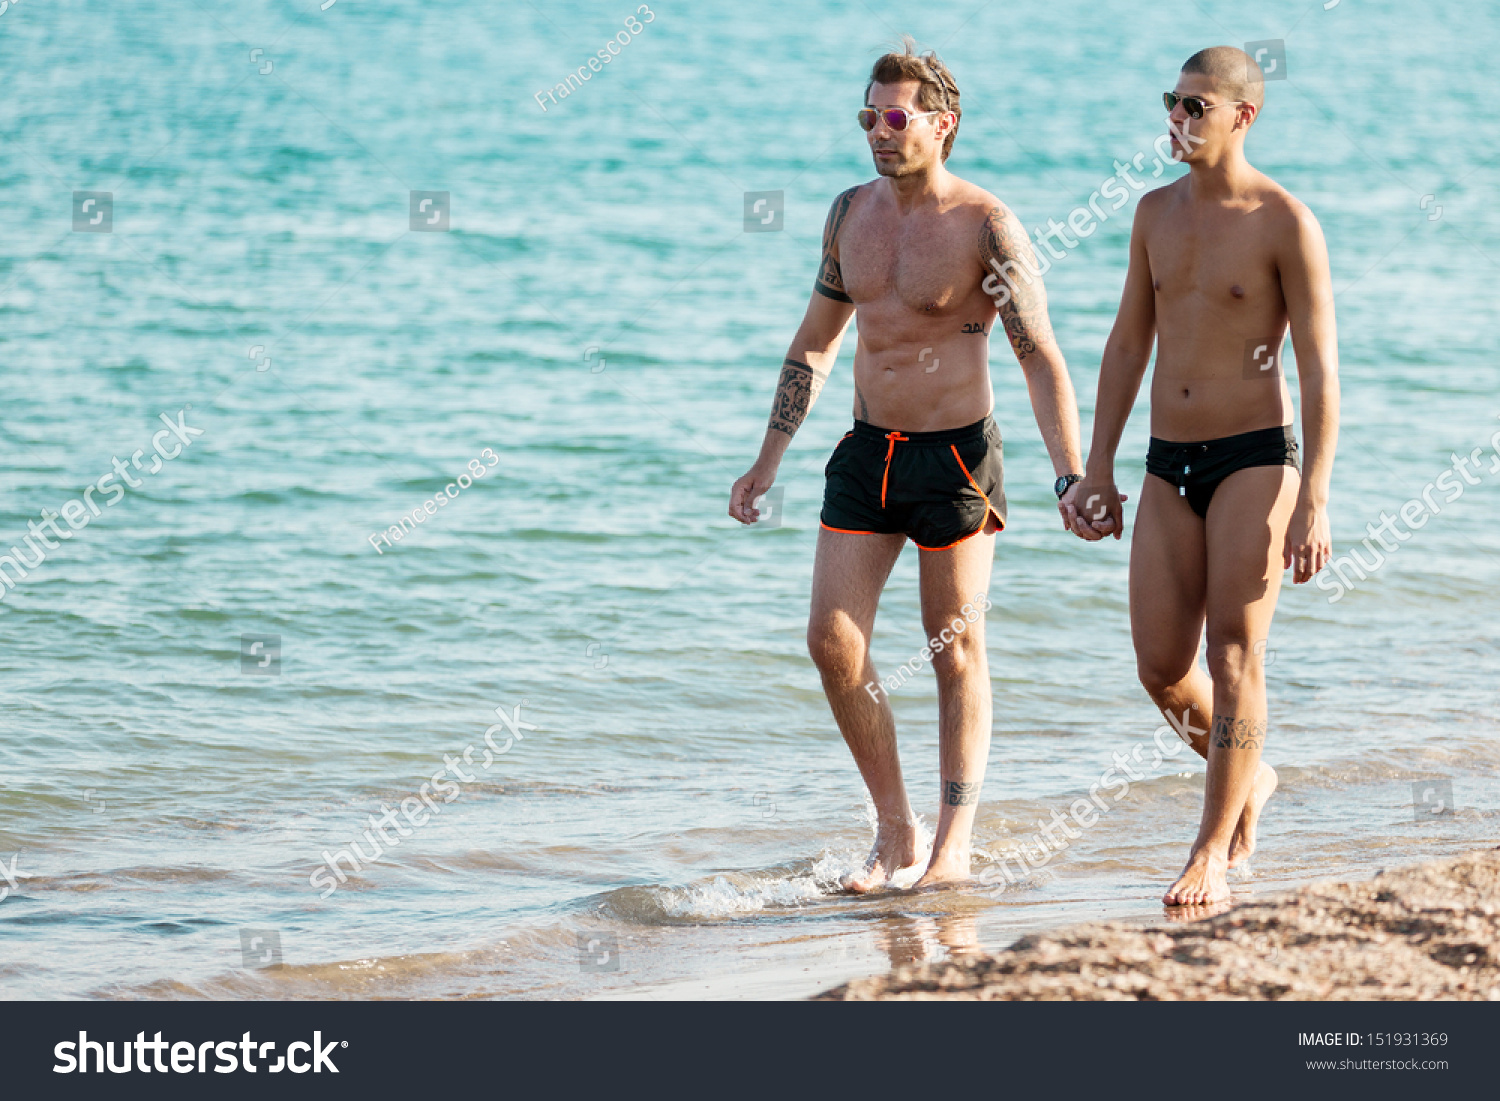 Nude beach walkers